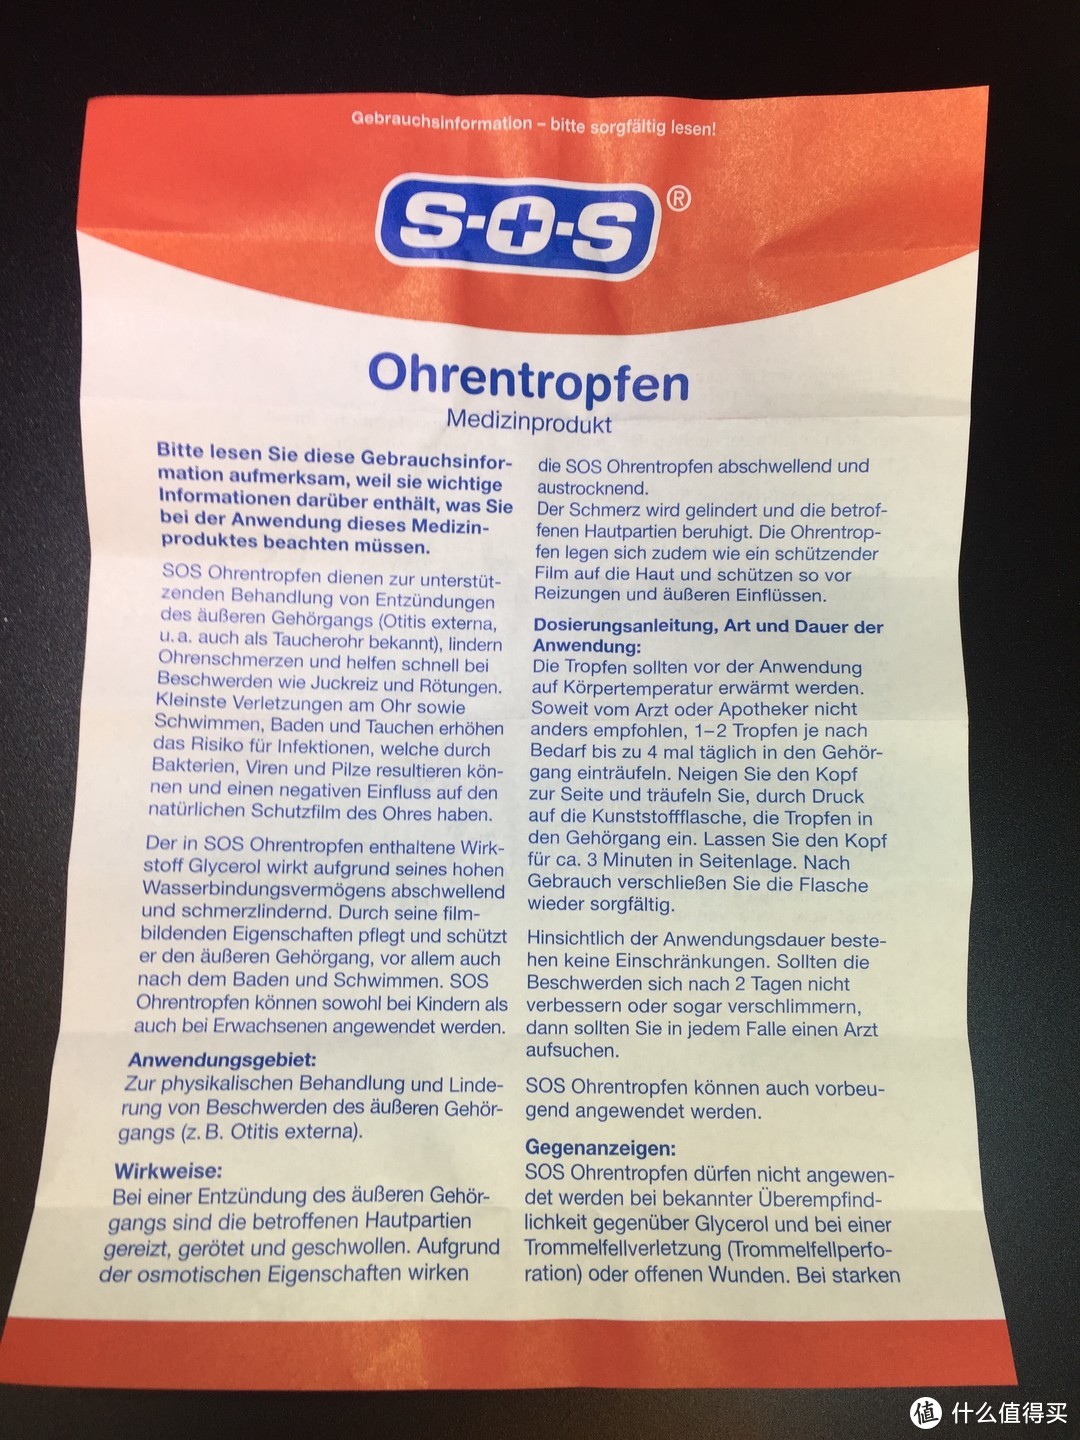 德国SOS 健康护理8件套 -- 细节说明一切